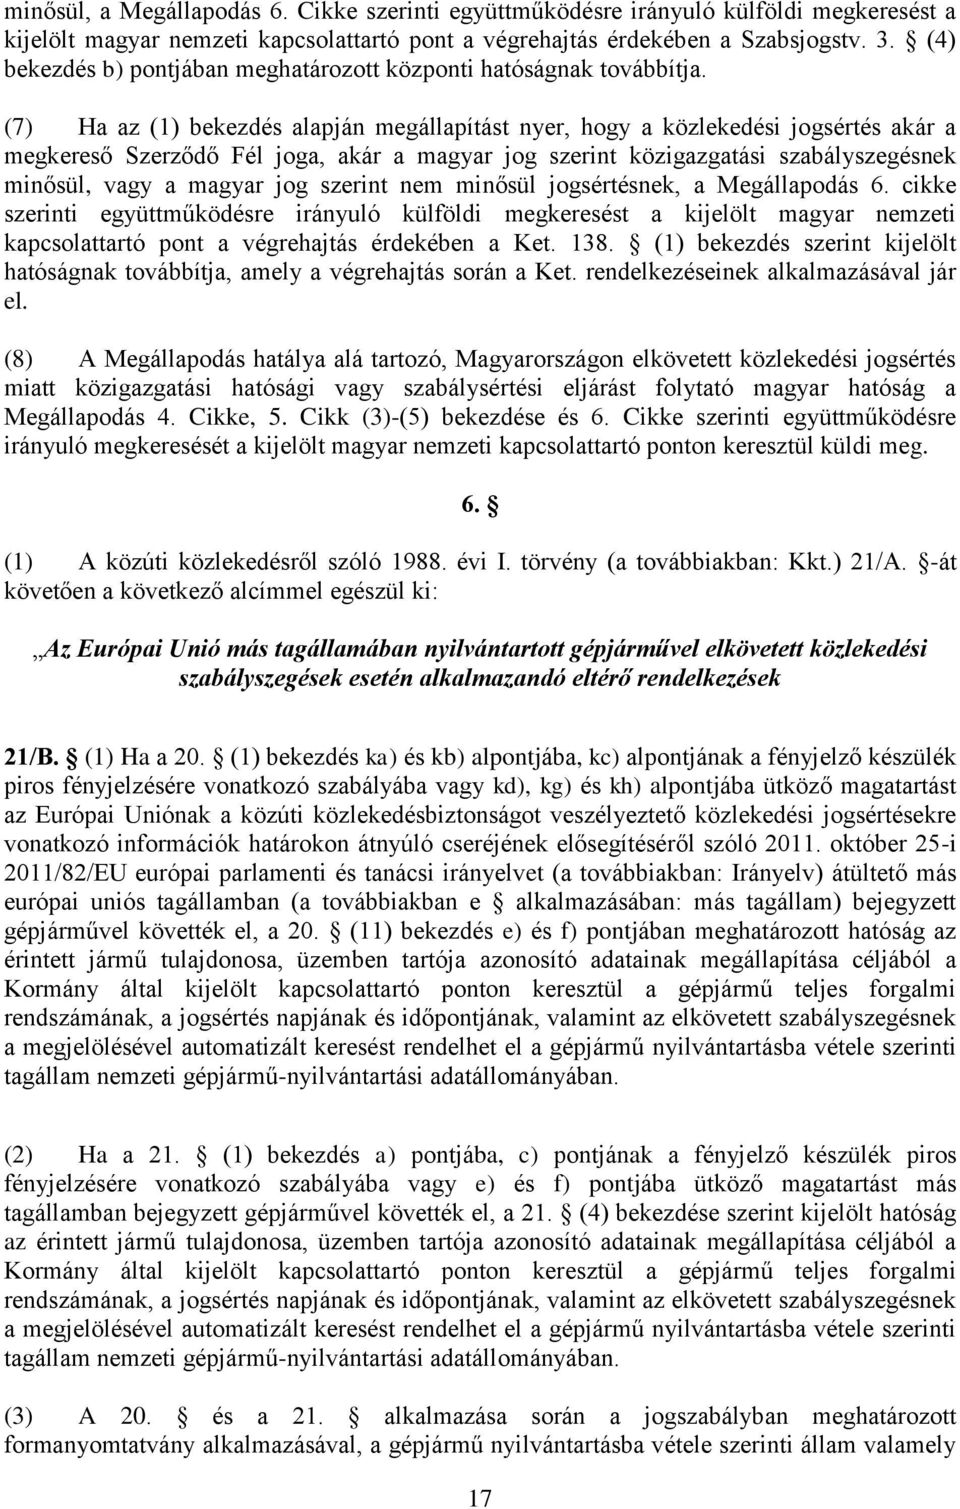 (7) Ha az (1) bekezdés alapján megállapítást nyer, hogy a közlekedési jogsértés akár a megkereső Szerződő Fél joga, akár a magyar jog szerint közigazgatási szabályszegésnek minősül, vagy a magyar jog